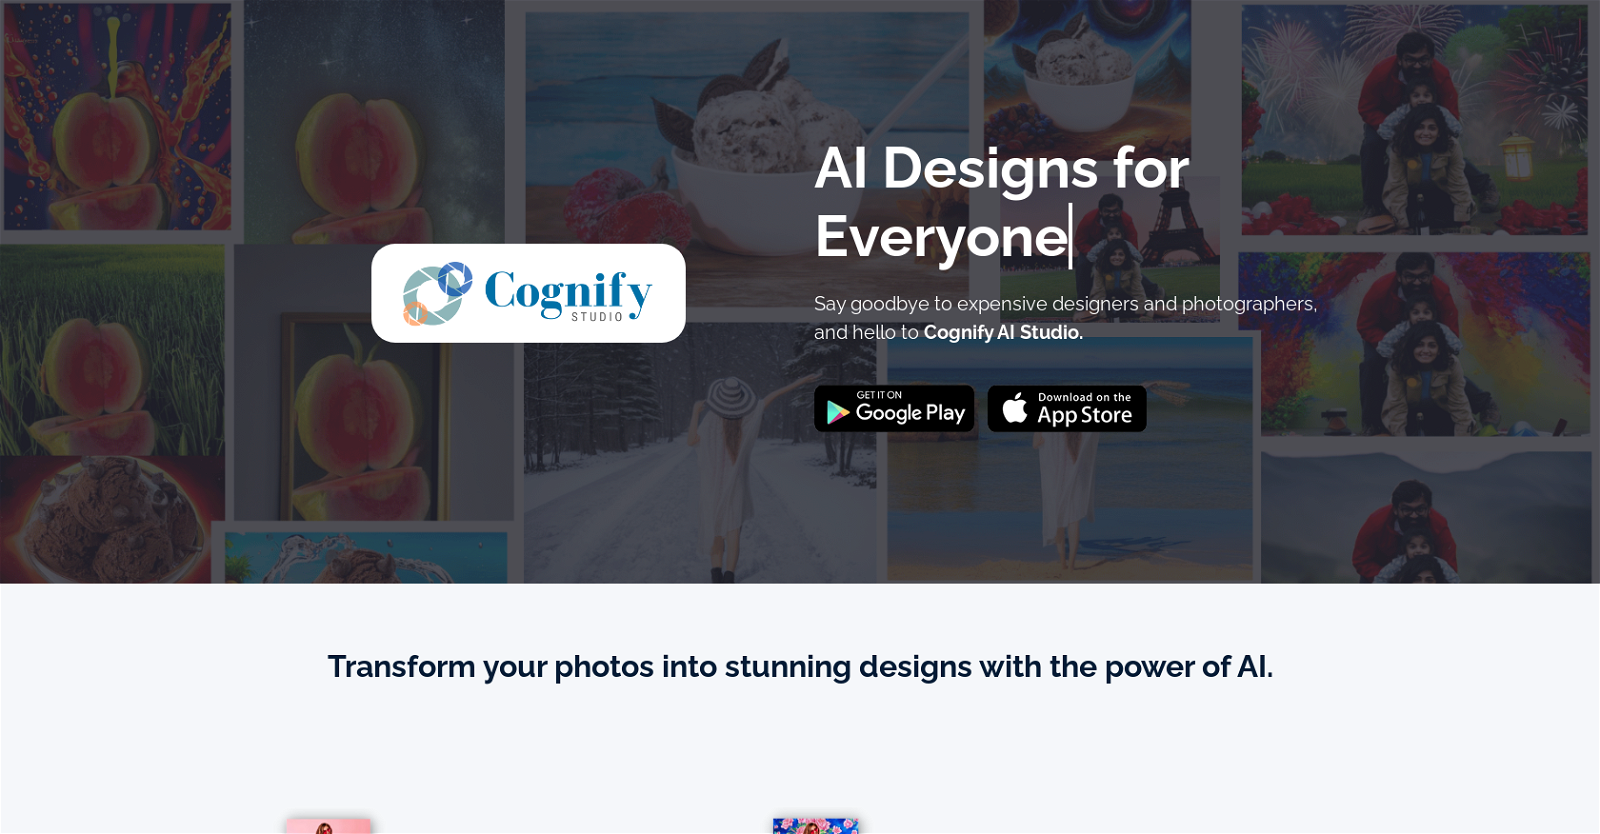 Cognify Studio website